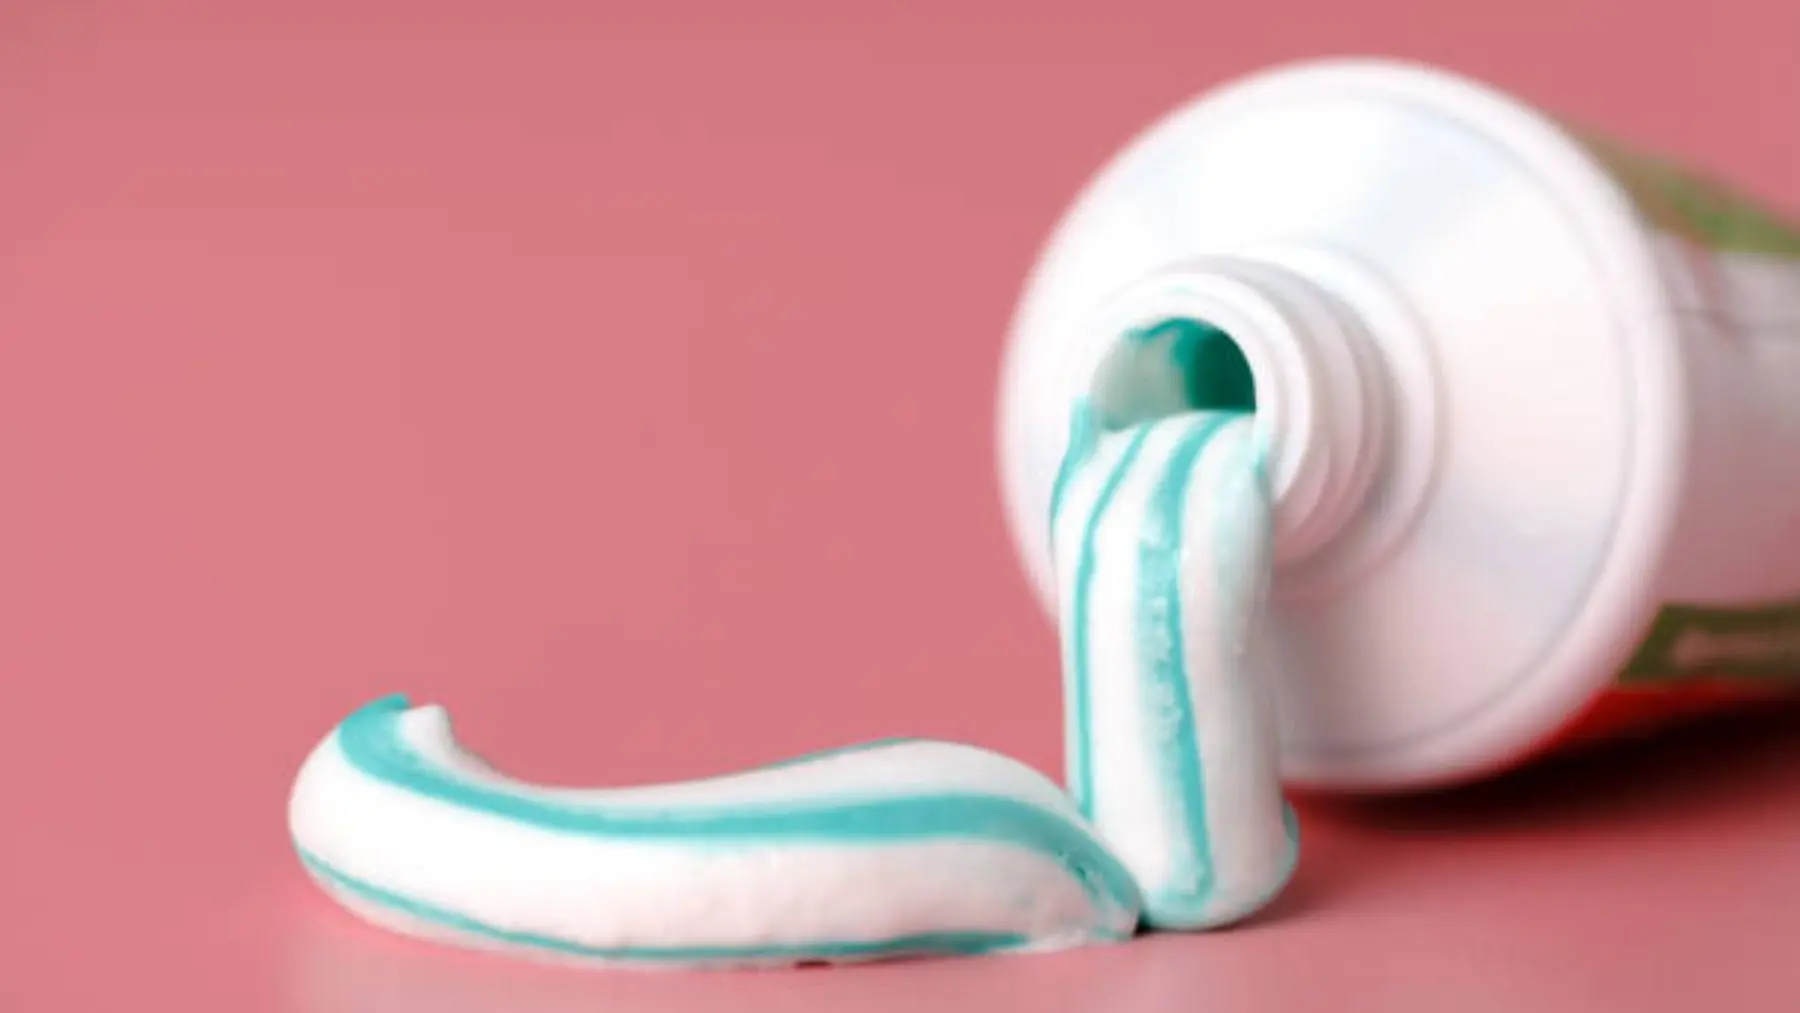 limpiar lavadora con limon y pasta de dientes - Cómo limpiar la lavadora con pasta de dientes